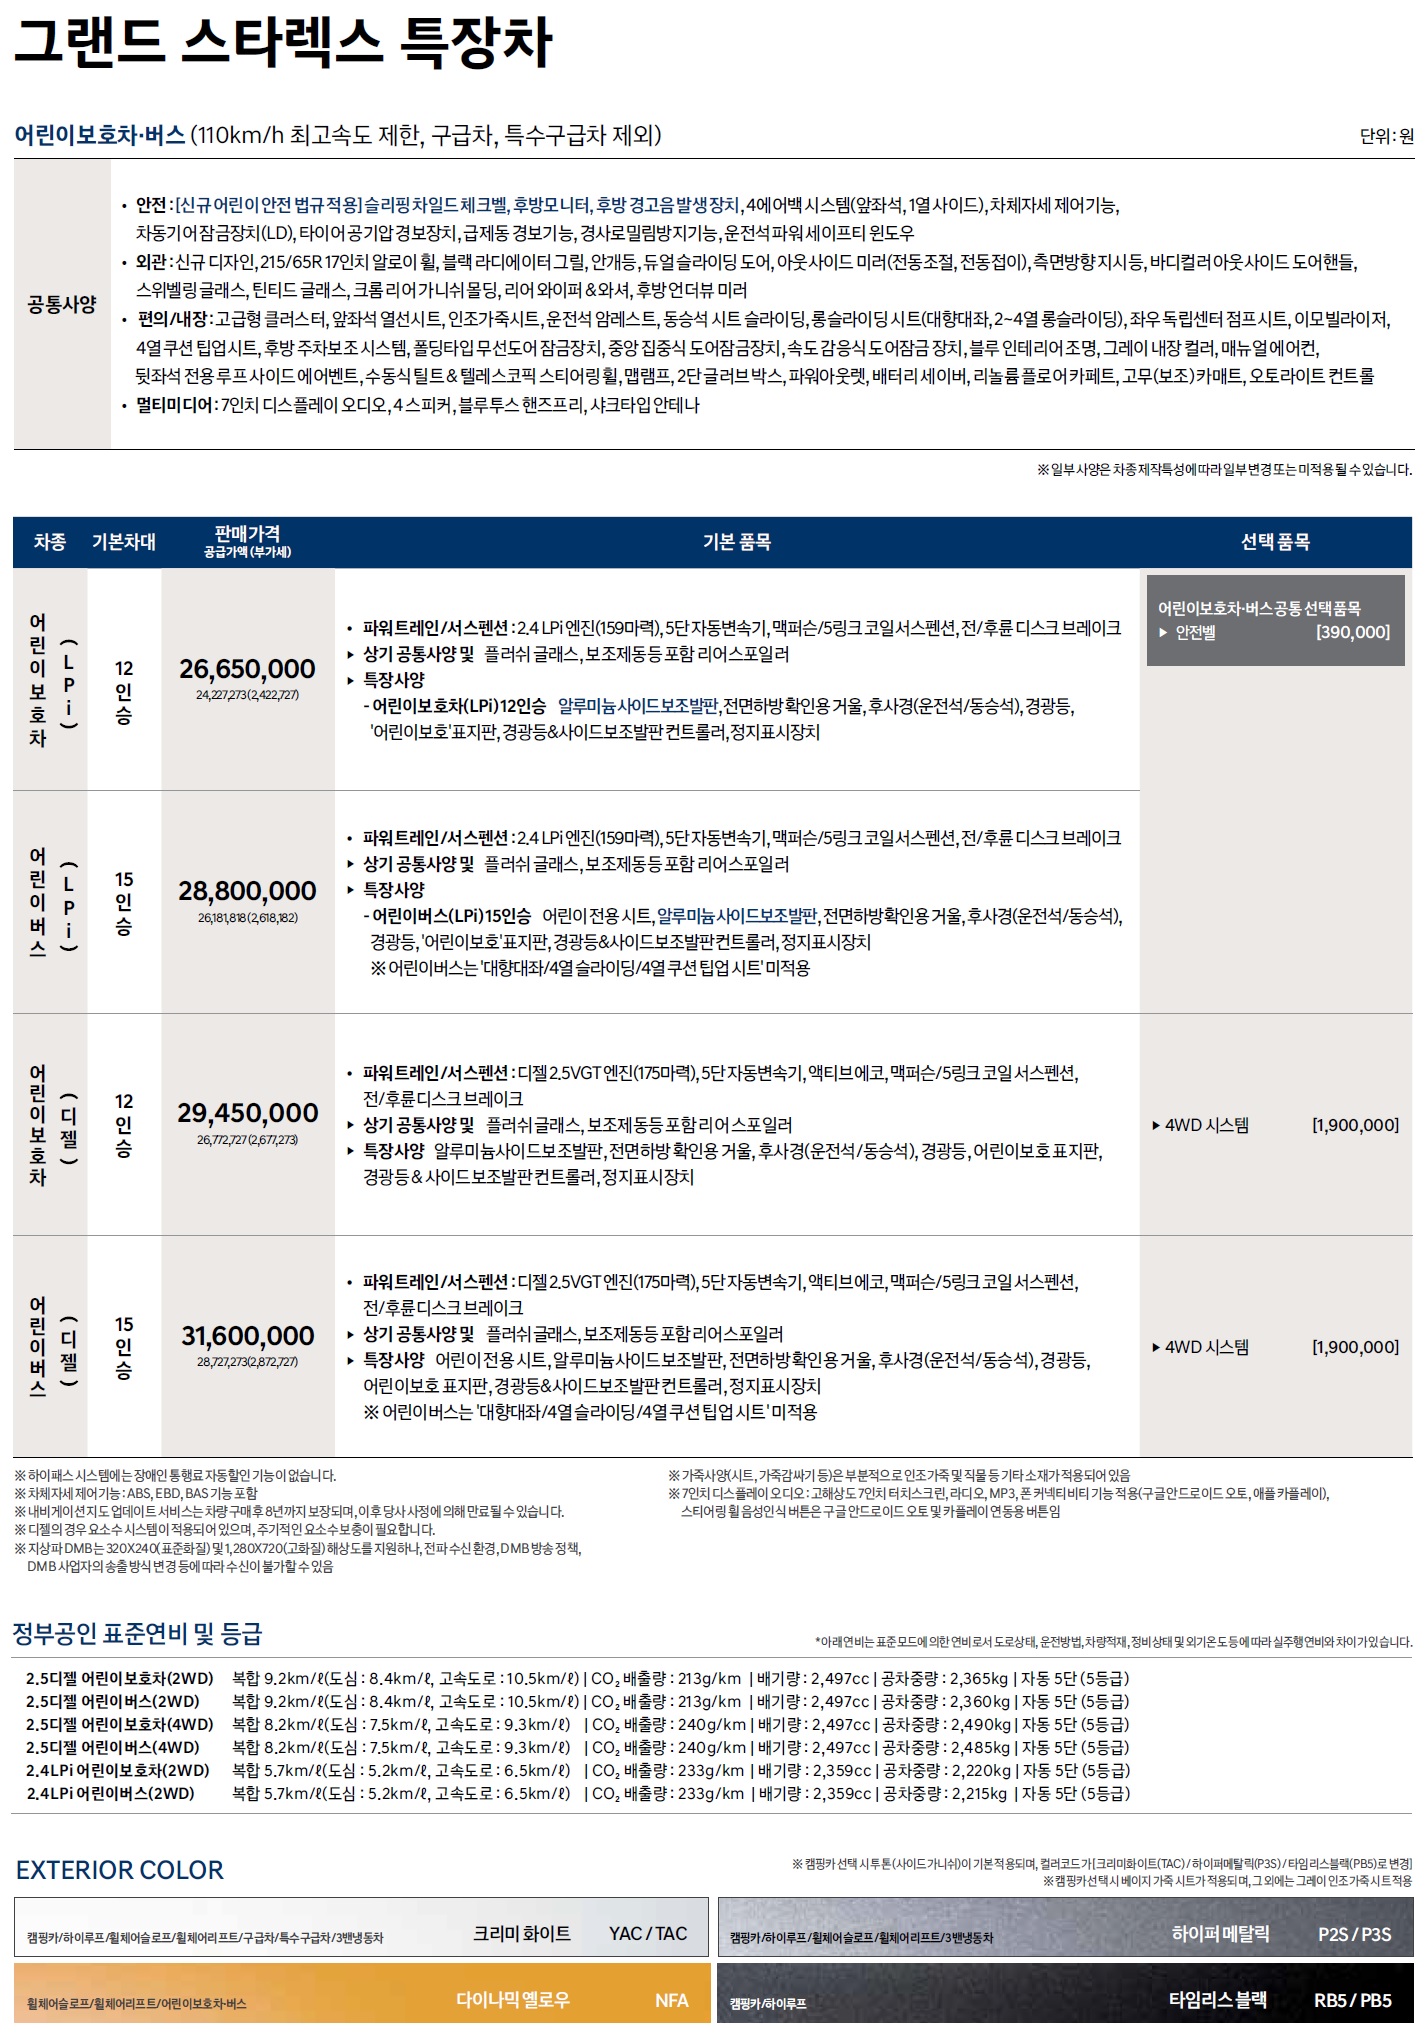 그랜드스타렉스 특장차 가격표 - 2020년형 (2019년 08월) -3.jpg